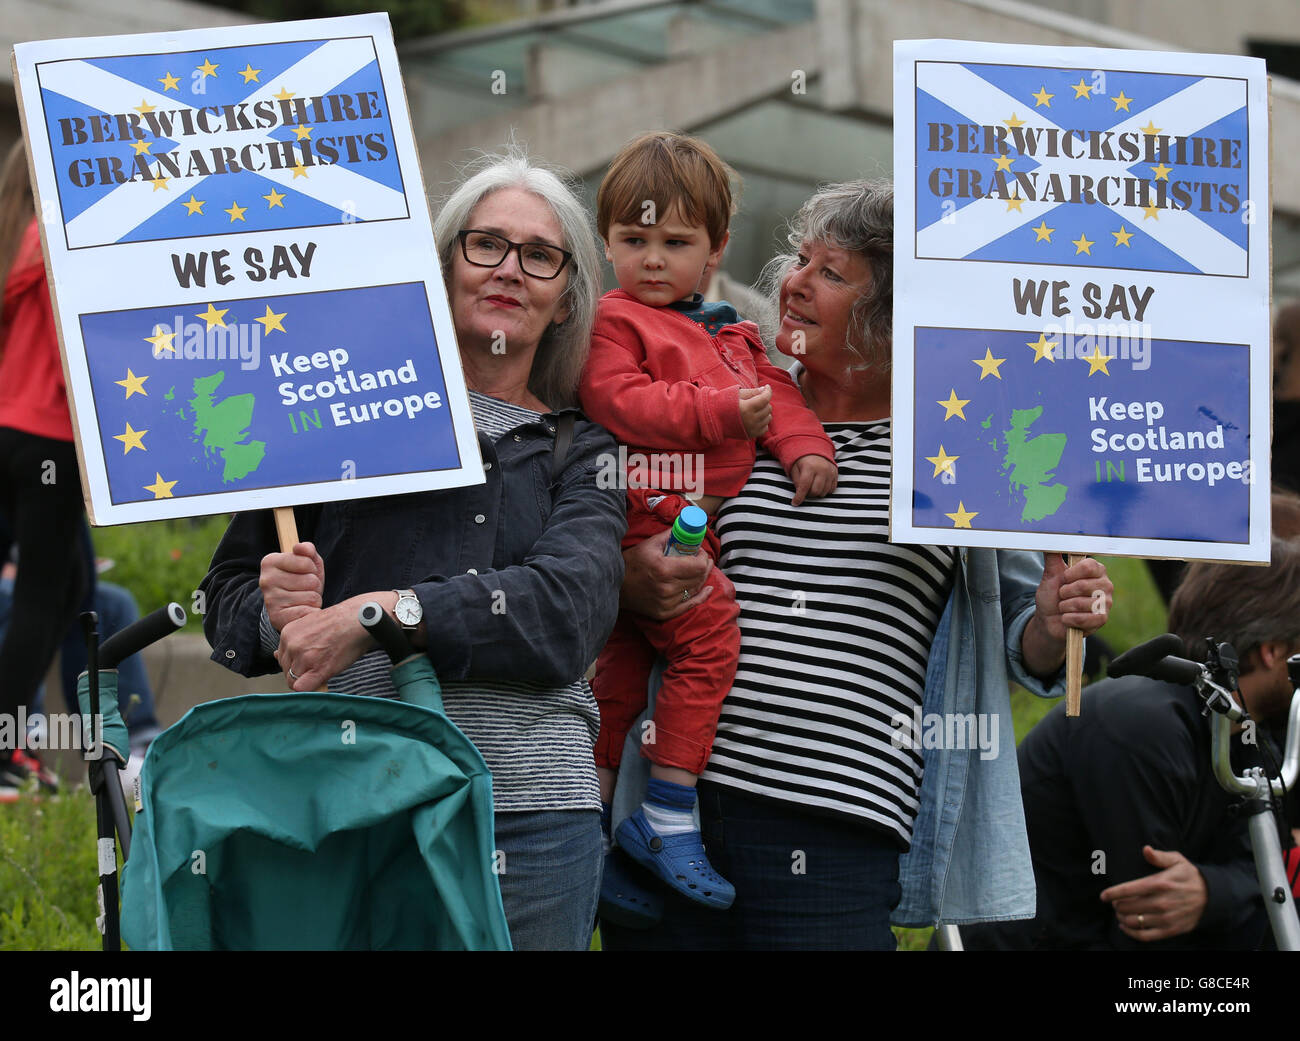 Kate Duncan (à gauche) et Alison Currie du Berwickshire Granarchists avec Alison groupe de campagne, le petit-fils de deux ans, à un pêcheur Finlay manifestation devant le Parlement écossais à Édimbourg en amont d'une déclaration au Brexit par premier ministre Nicola Sturgeon. Banque D'Images